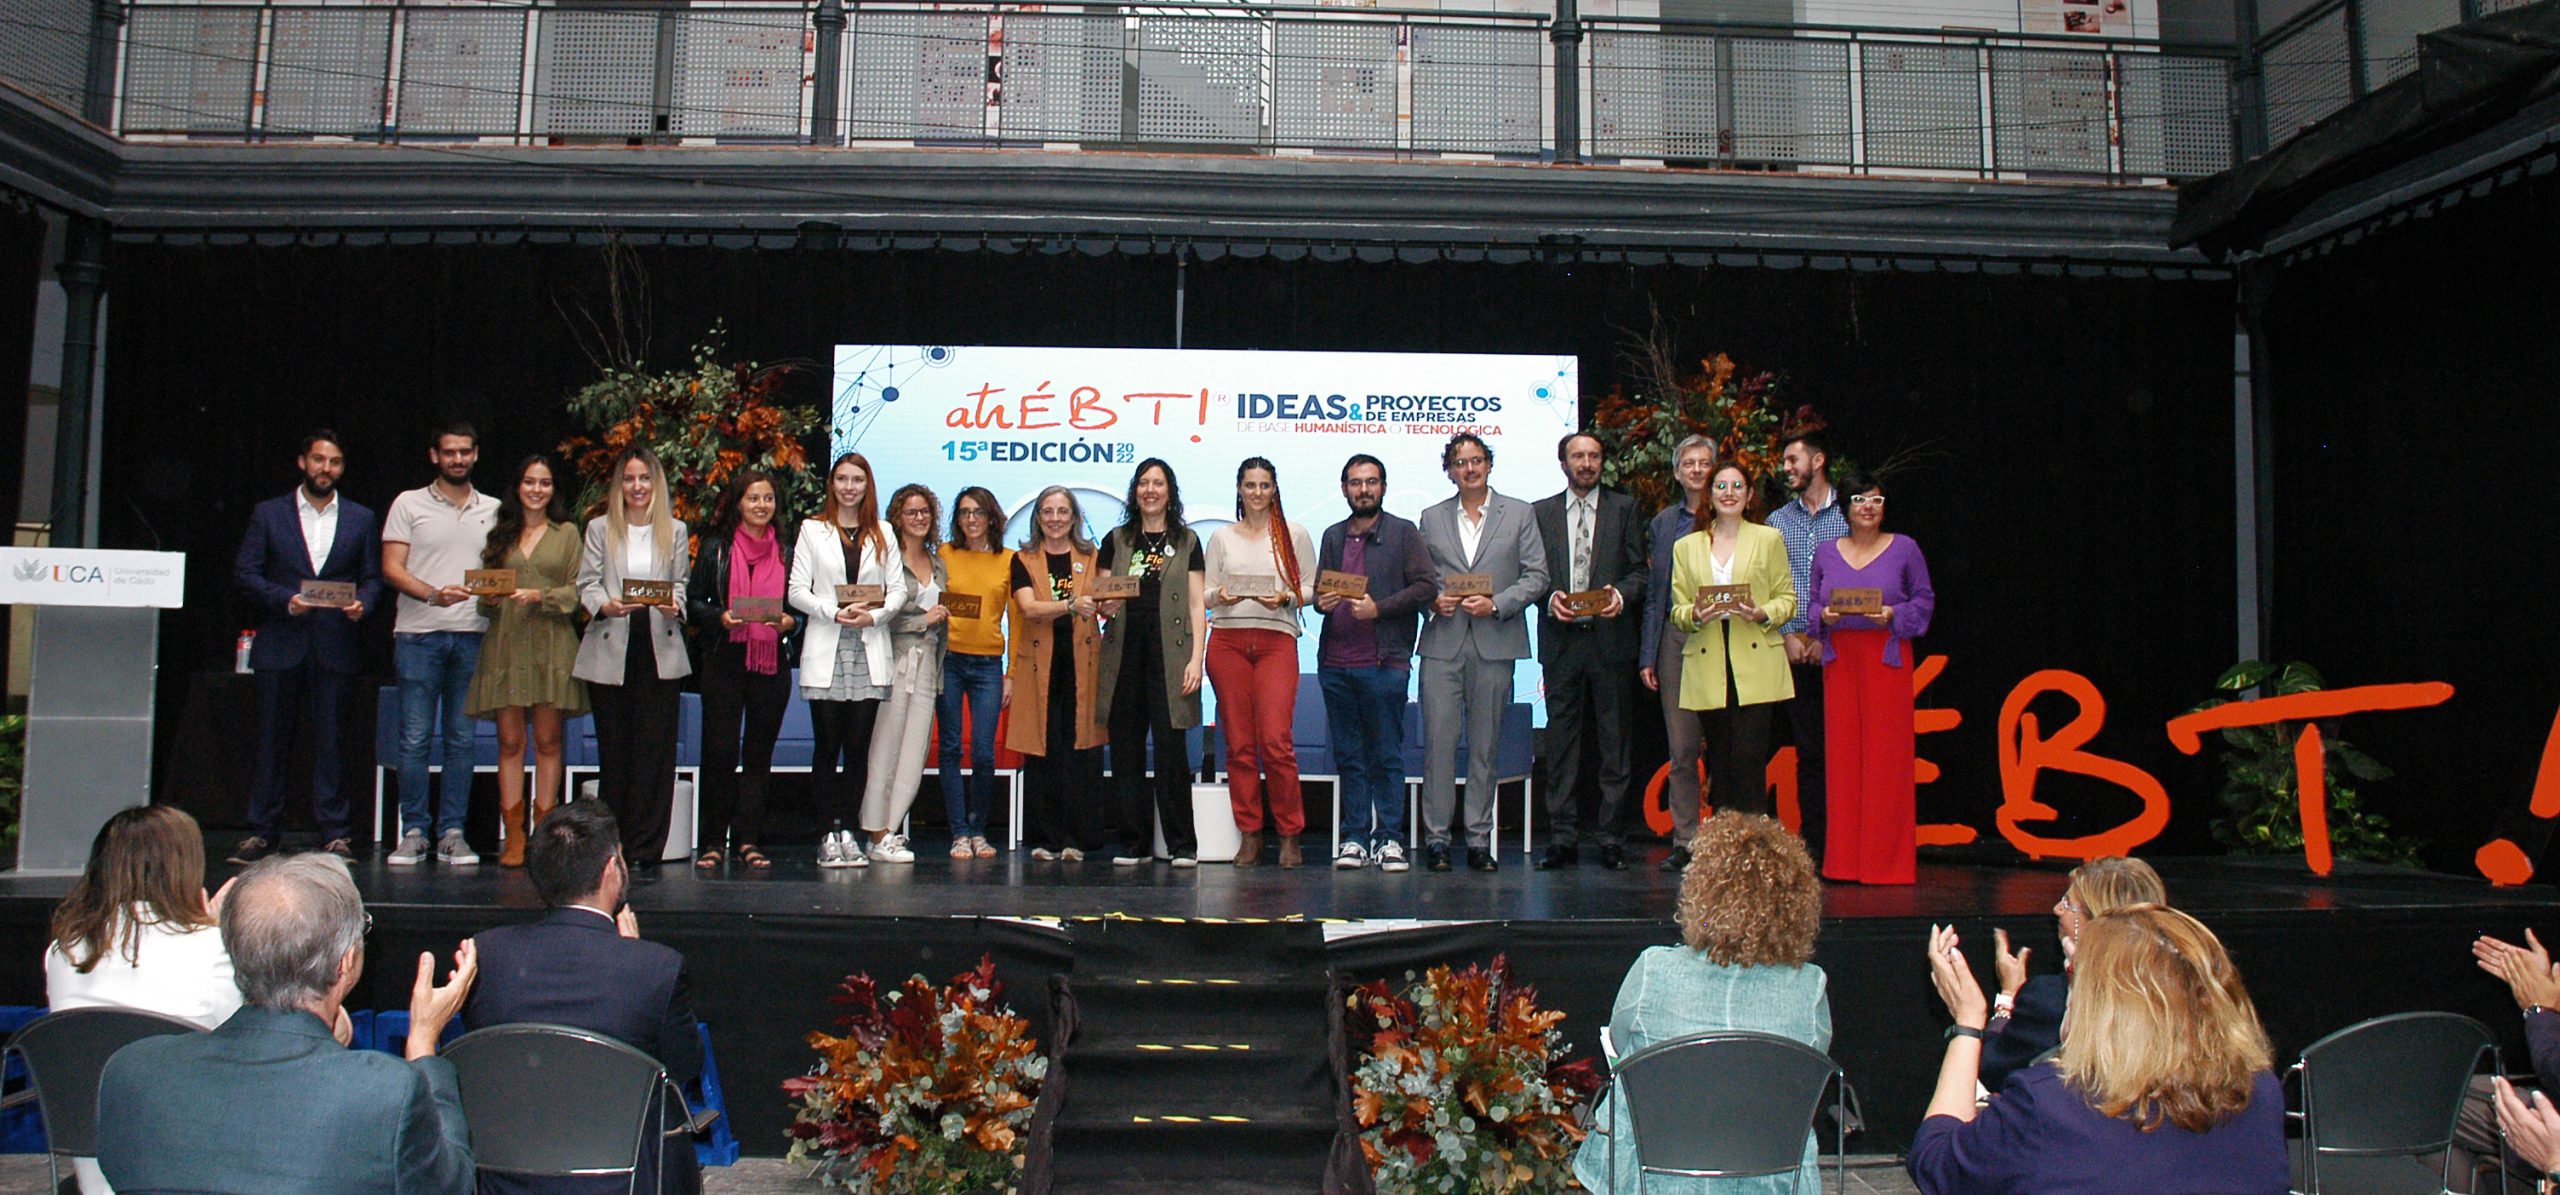 La UCA premia los proyectos empresariales ‘Vive Muy Mola’ y ‘El Flamenco como camino a la libertad’ en su XV edición de atrÉBT!®